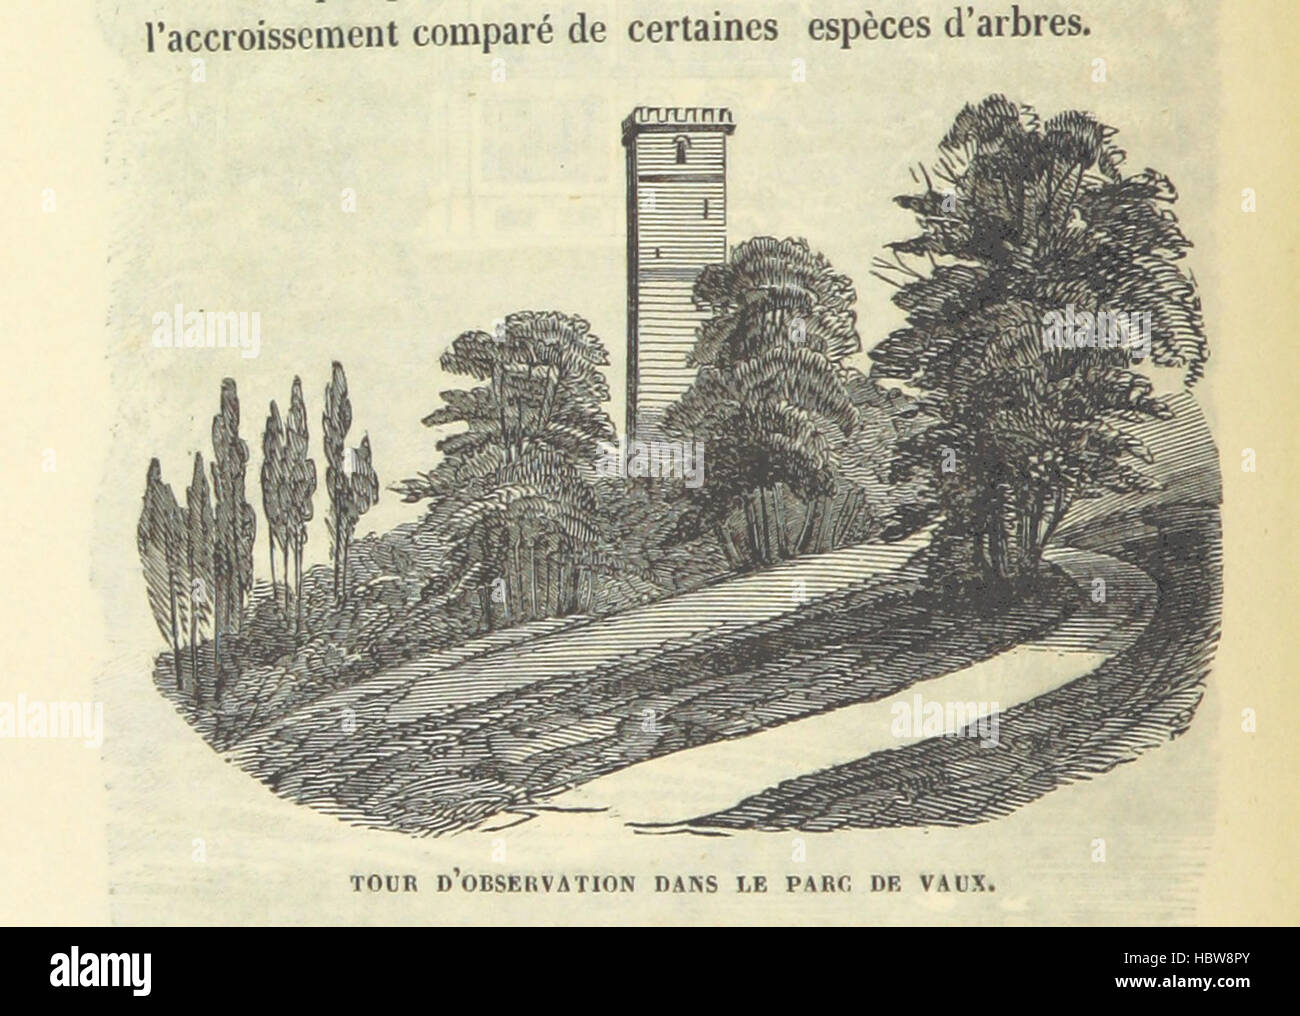 Immagine presa da pagina 302 di 'Statistique monumentale du Calvados' immagine presa da pagina 302 di 'Statistique monumentale du Calvados' Foto Stock